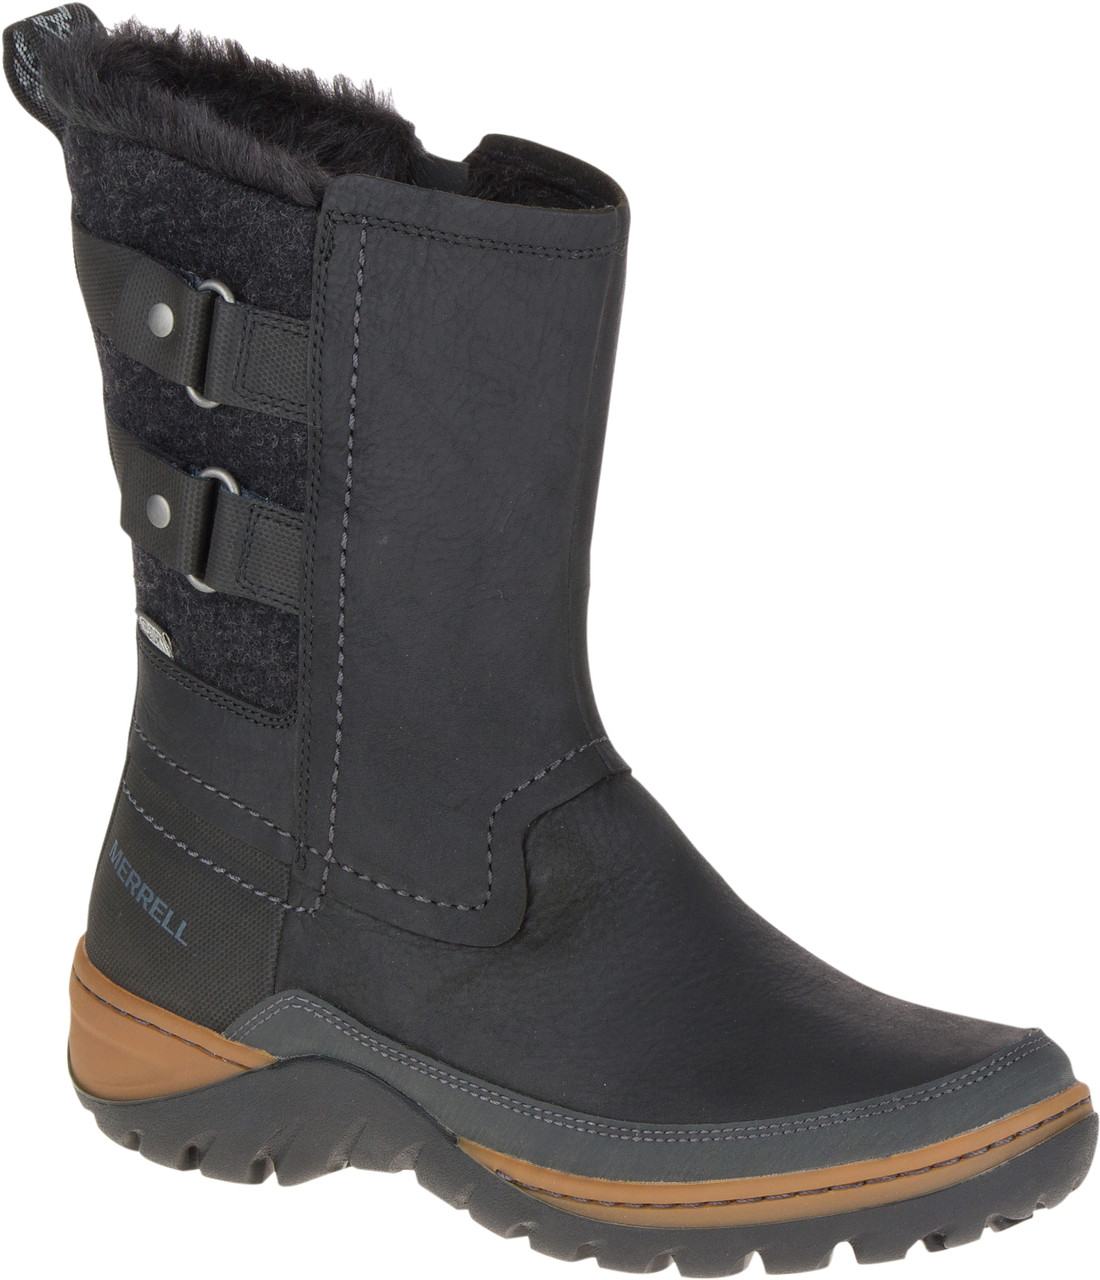 Merrell Sylva Mid Buckle Waterproof Winter Boots - Women's | MEC